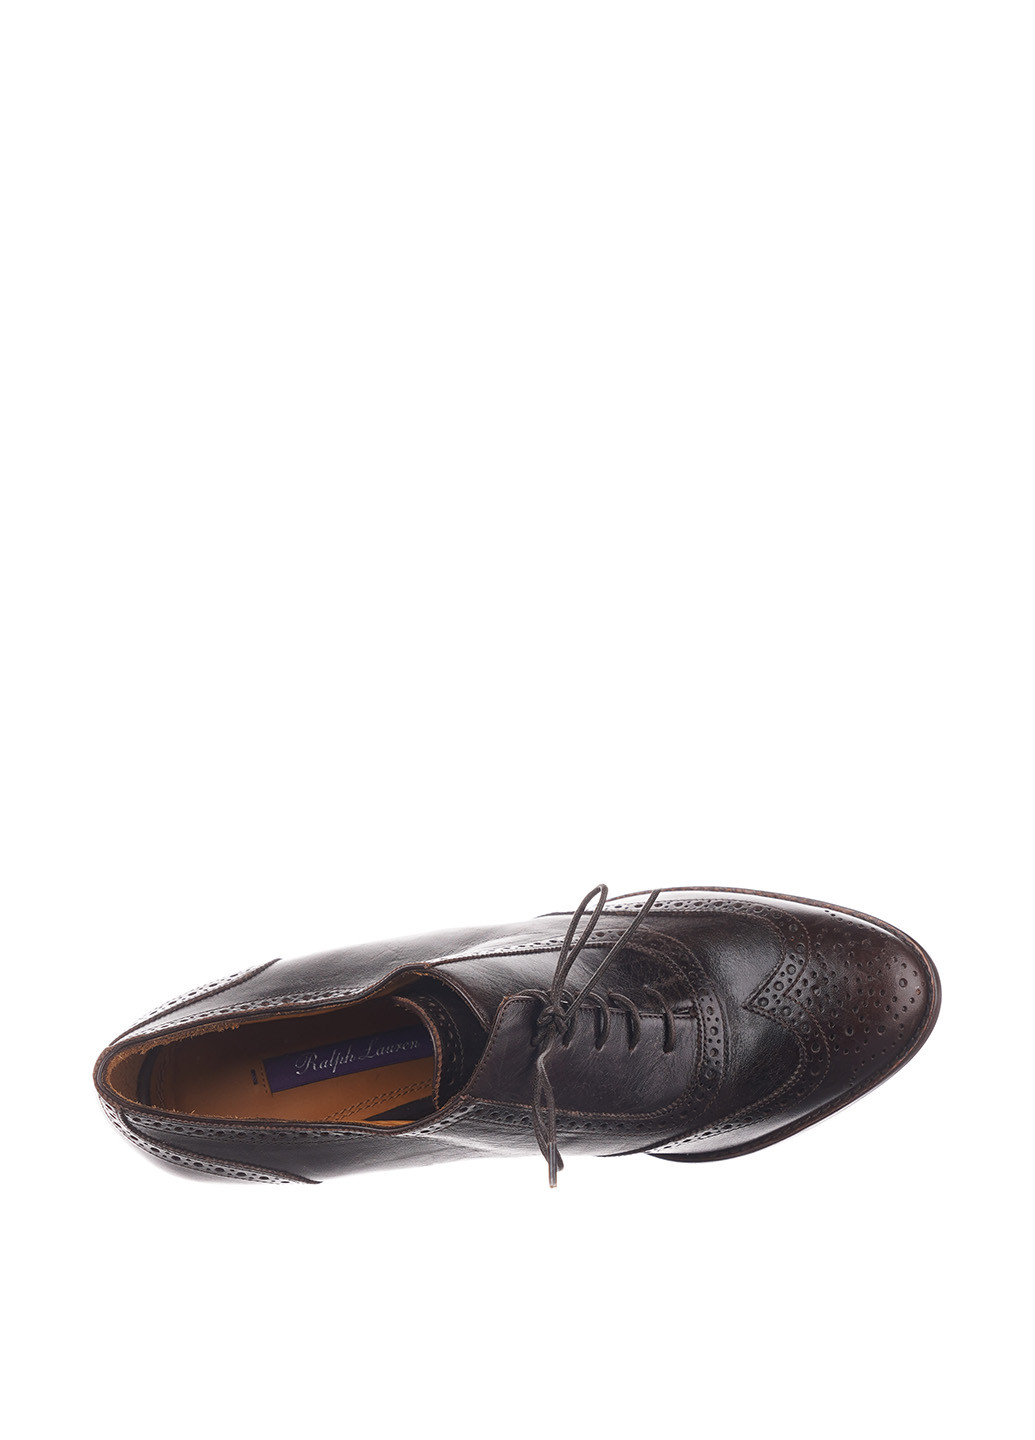 Туфли Ralph Lauren на высоком каблуке с перфорацией